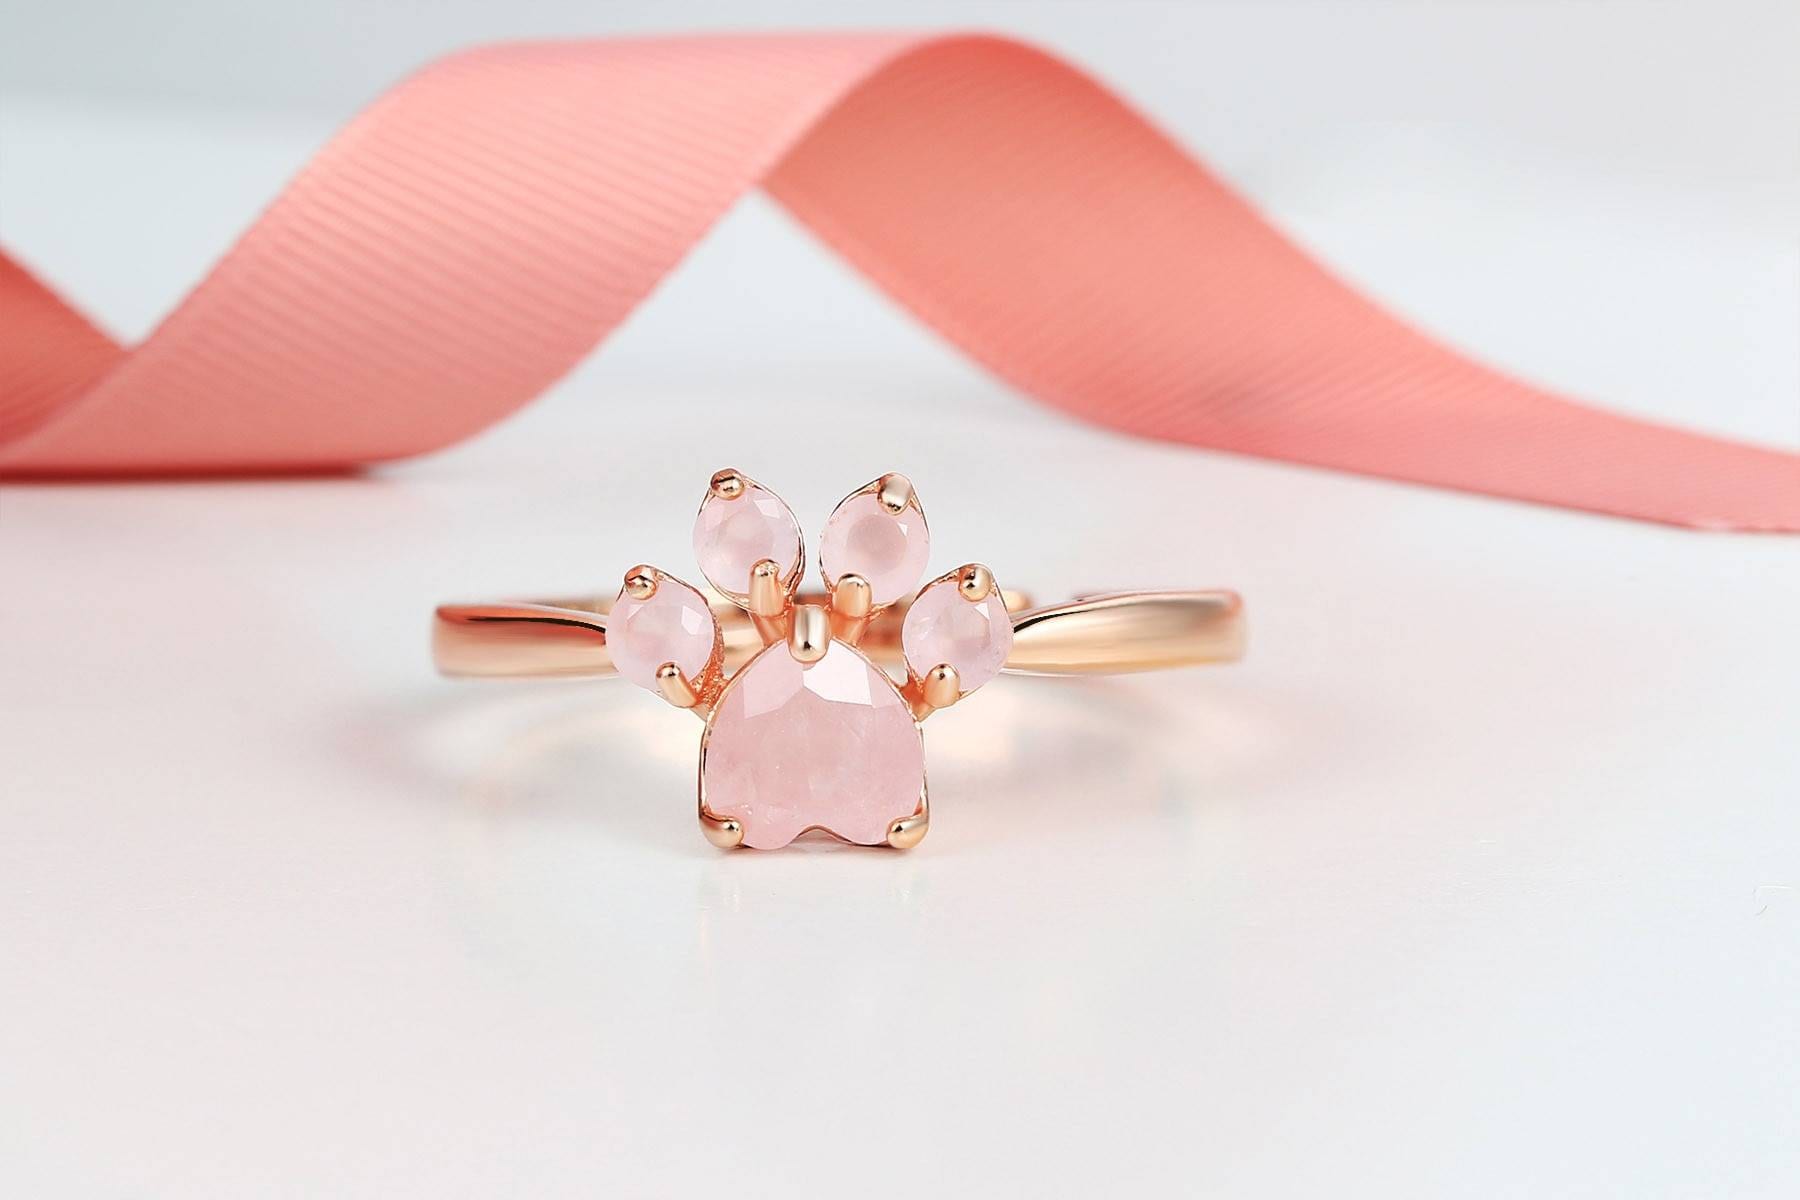 Pink Paw Rose Quartz Ring in Rings